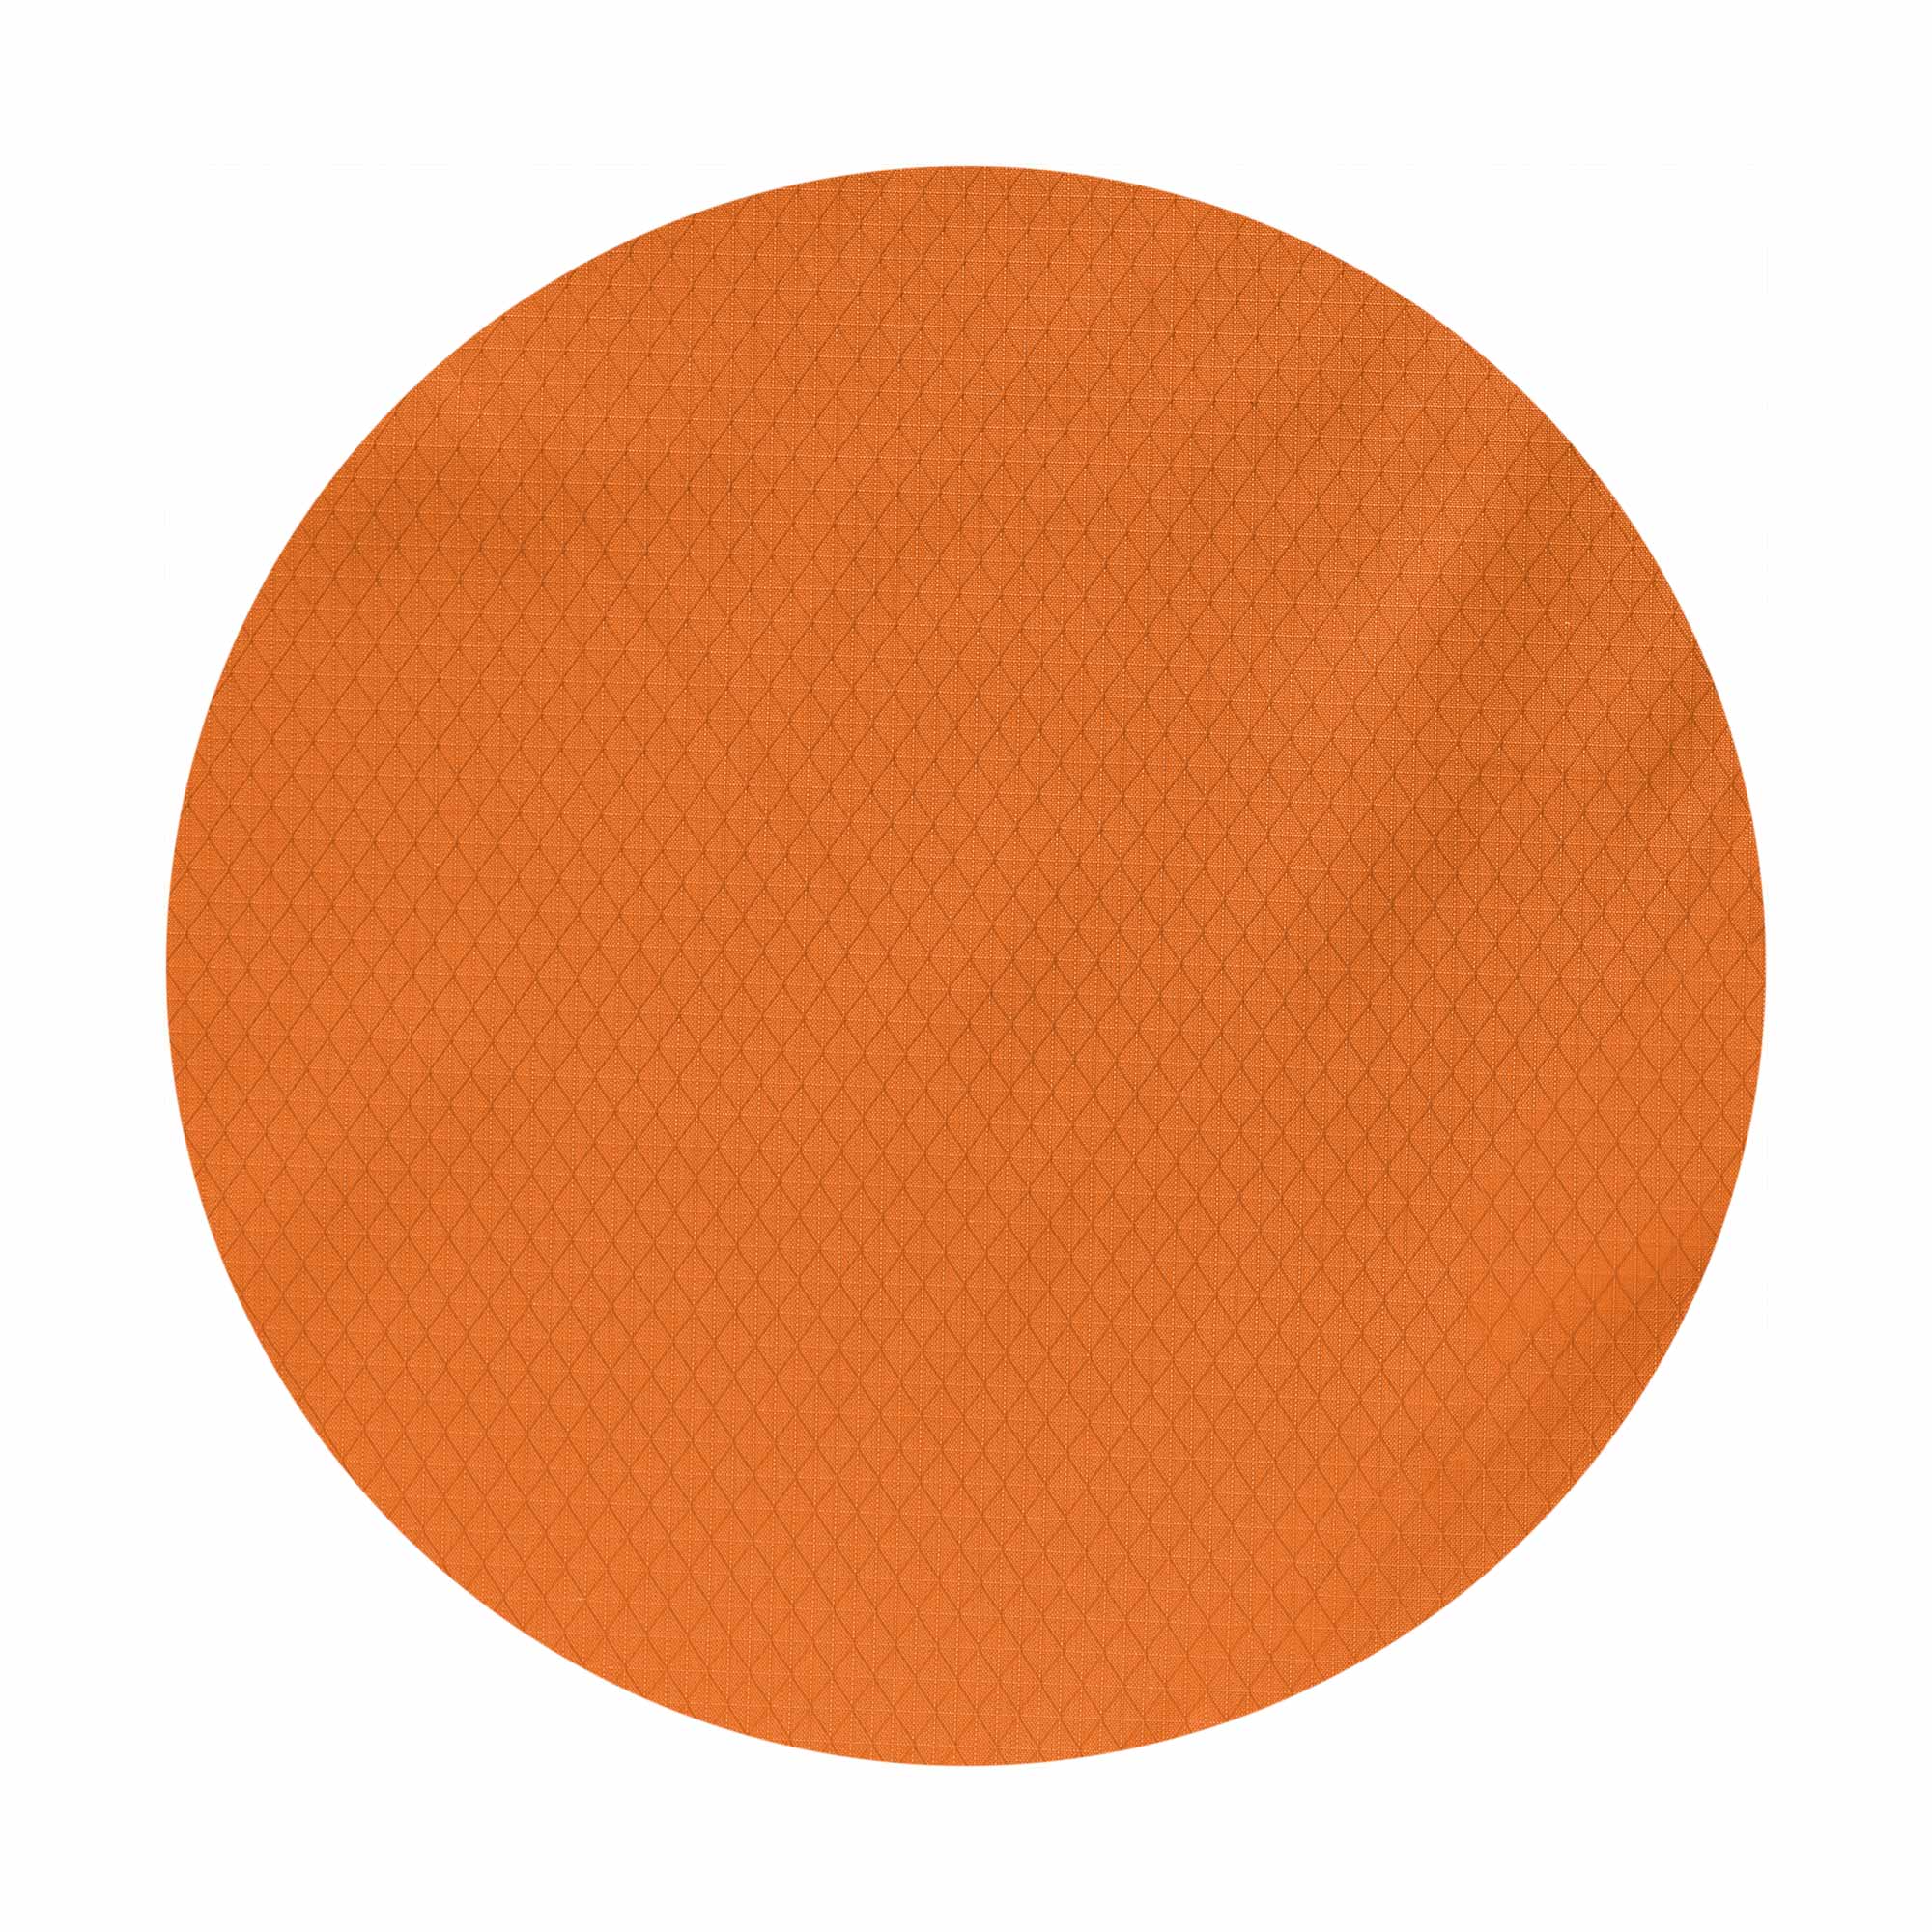 Sampler Threads - Burnt Orange